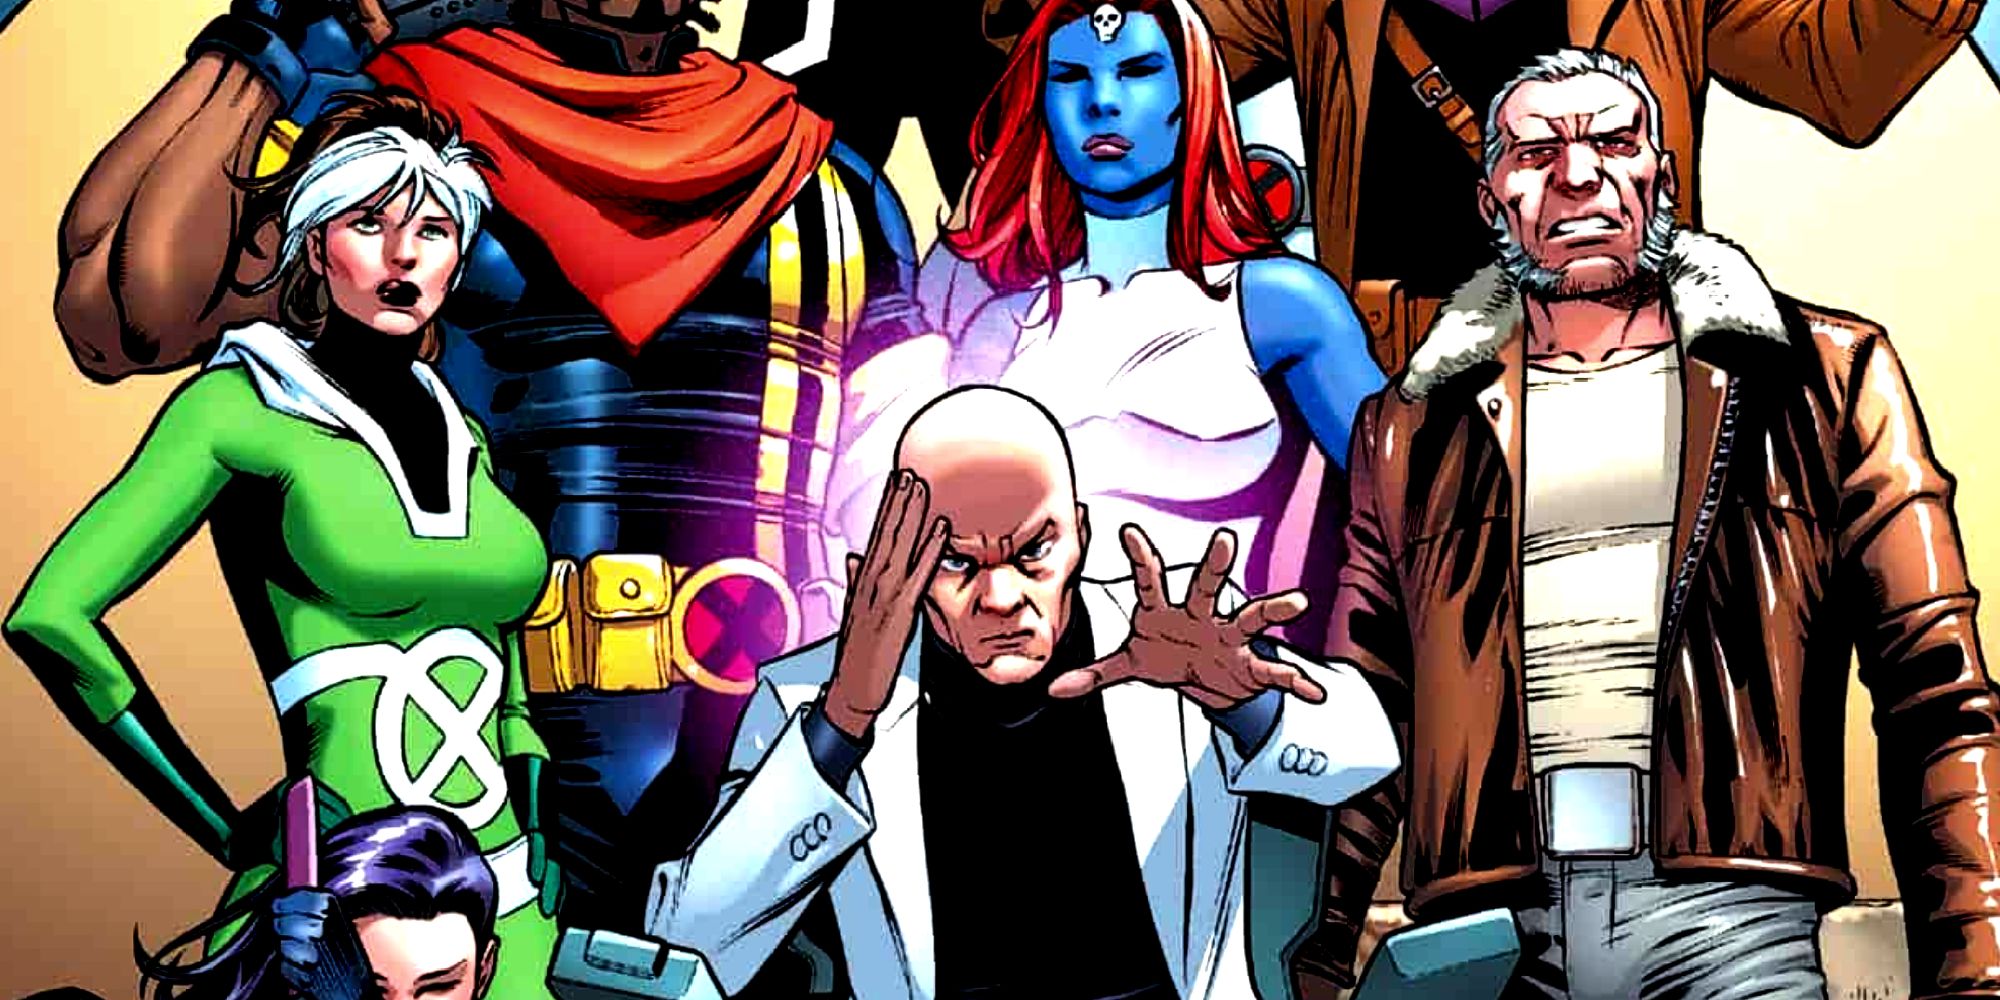 Professor X lidera um grupo de mutantes na arte da capa dos quadrinhos dos X-Men